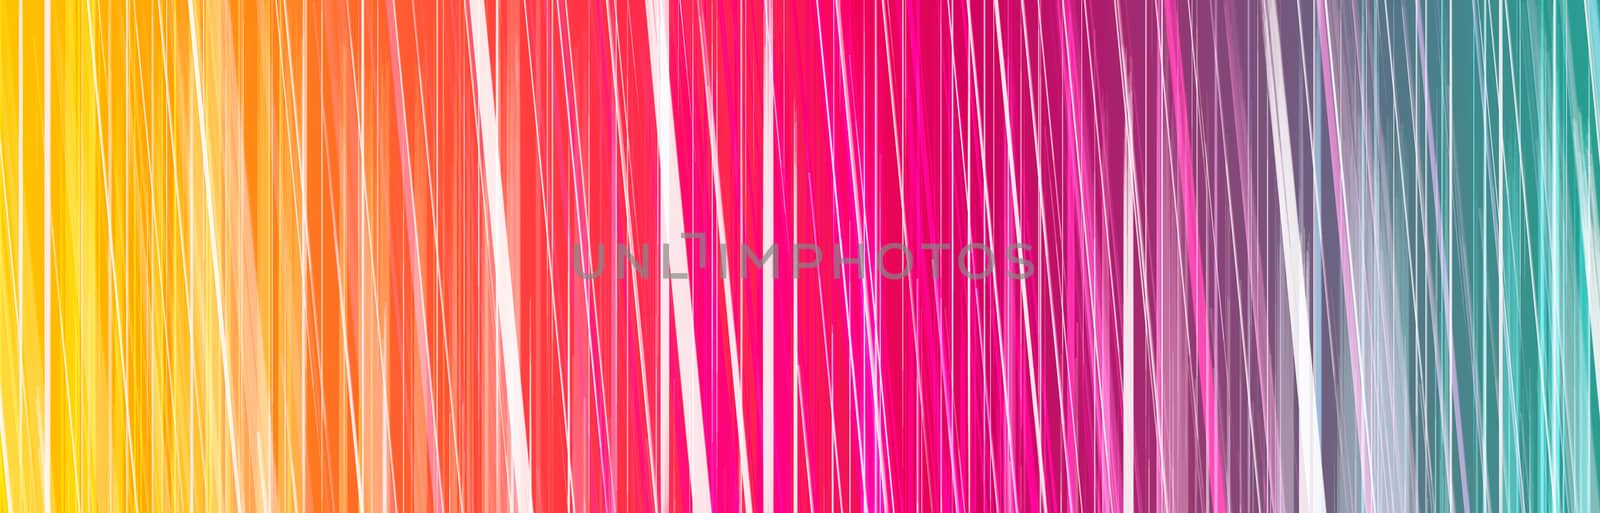 Colorful background for web design. by Eugene_Yemelyanov